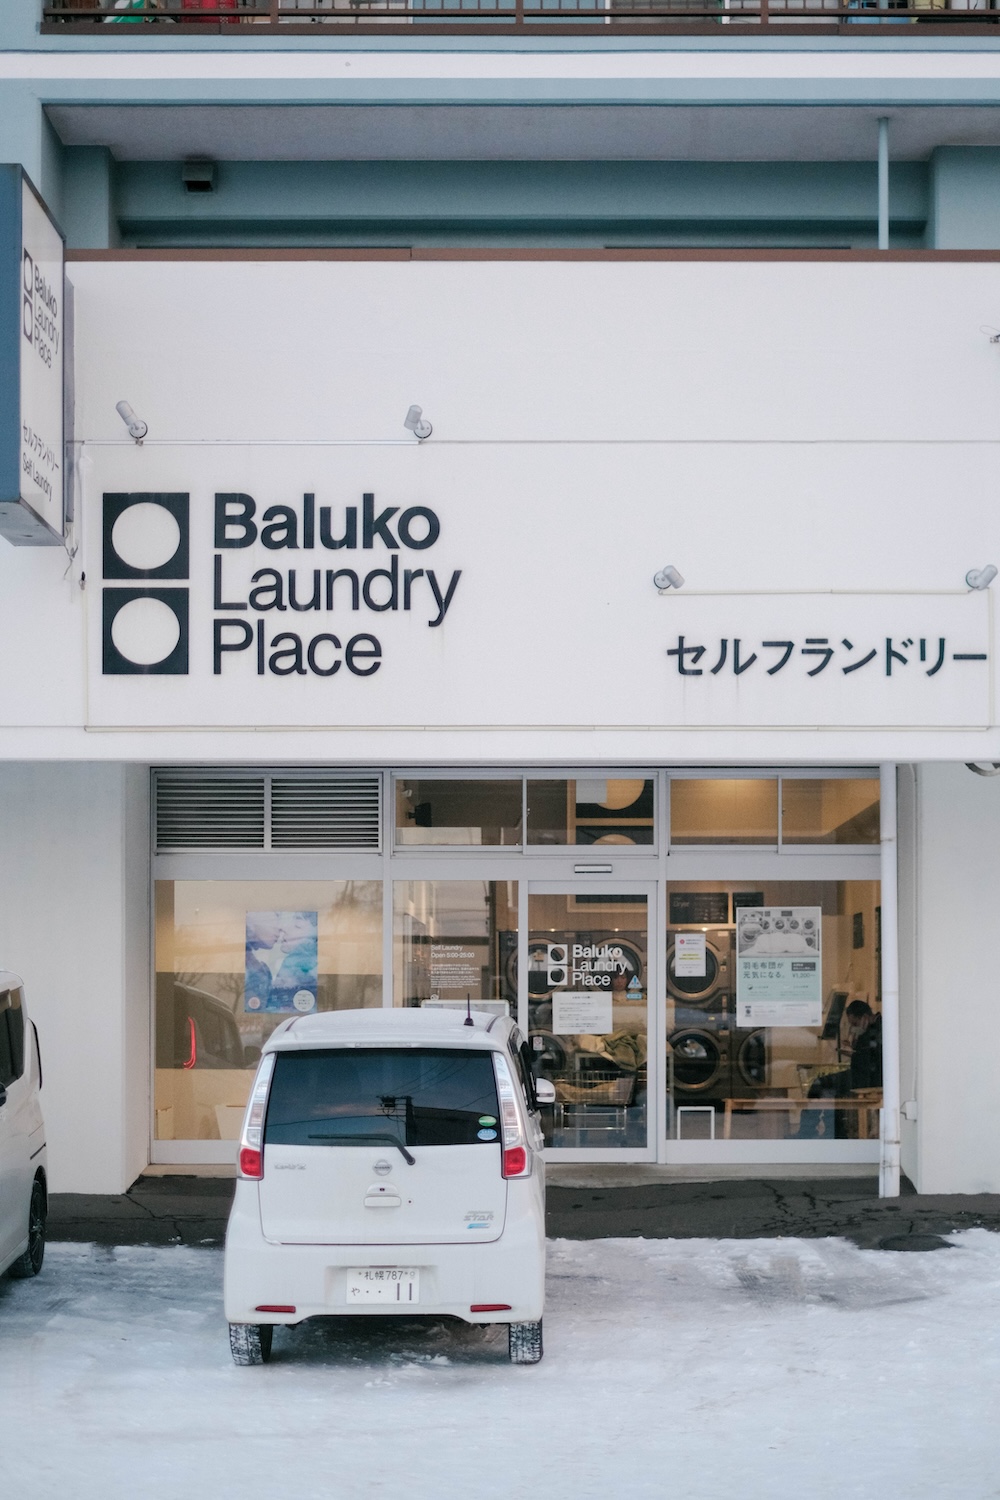 也英家旁，札幌洗衣店「Baluko Laundry Place 東苗穂」